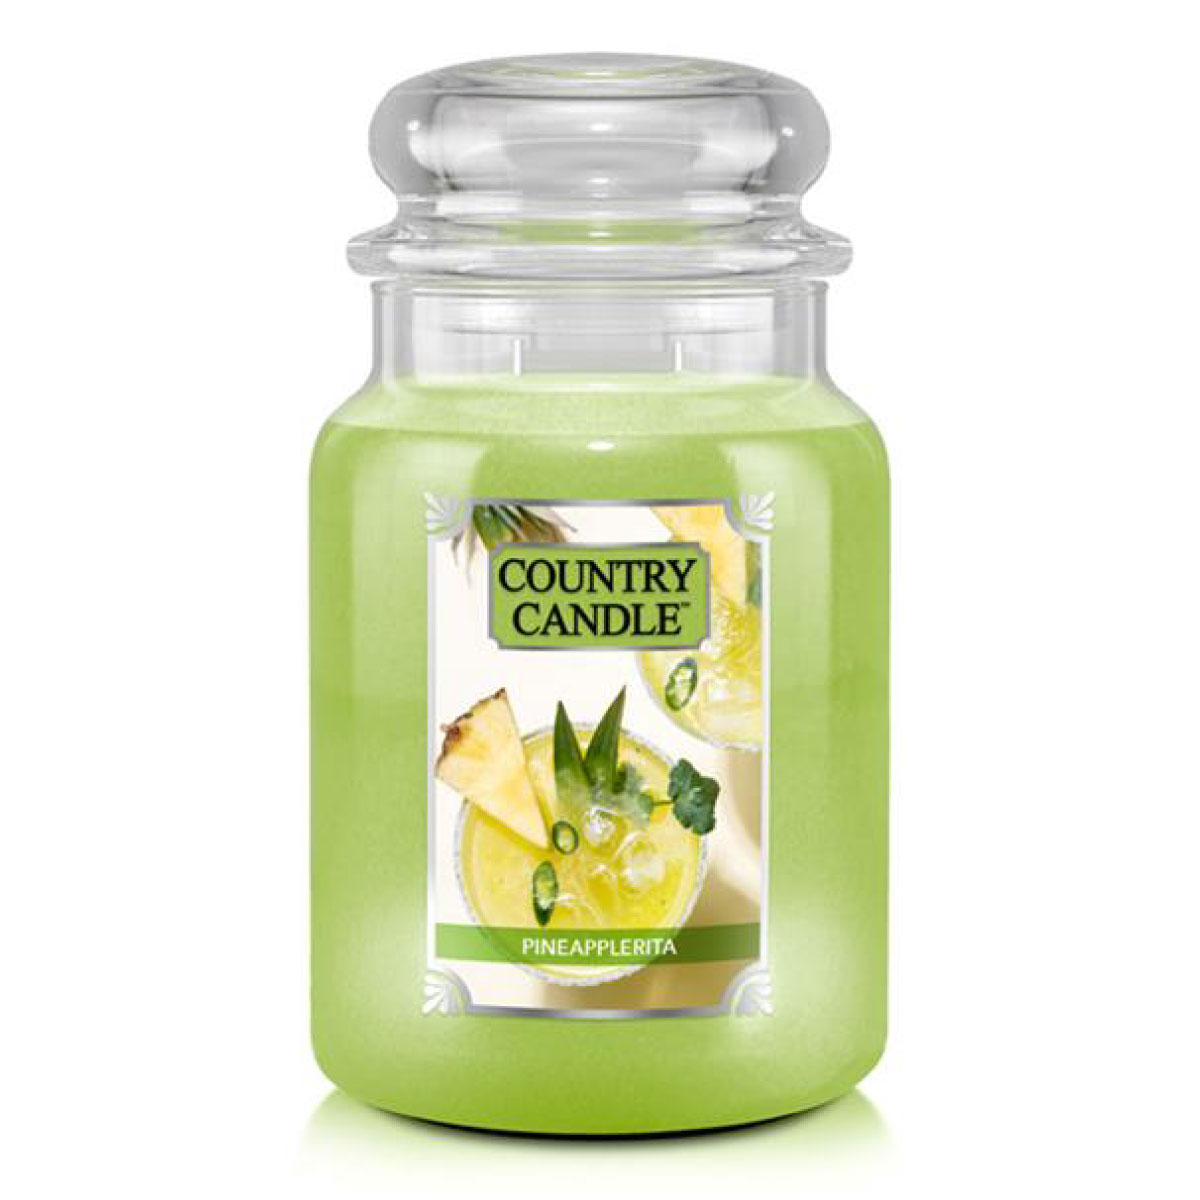 Pineapplerita - Duftkerze im Glas 652g von Country Candle™